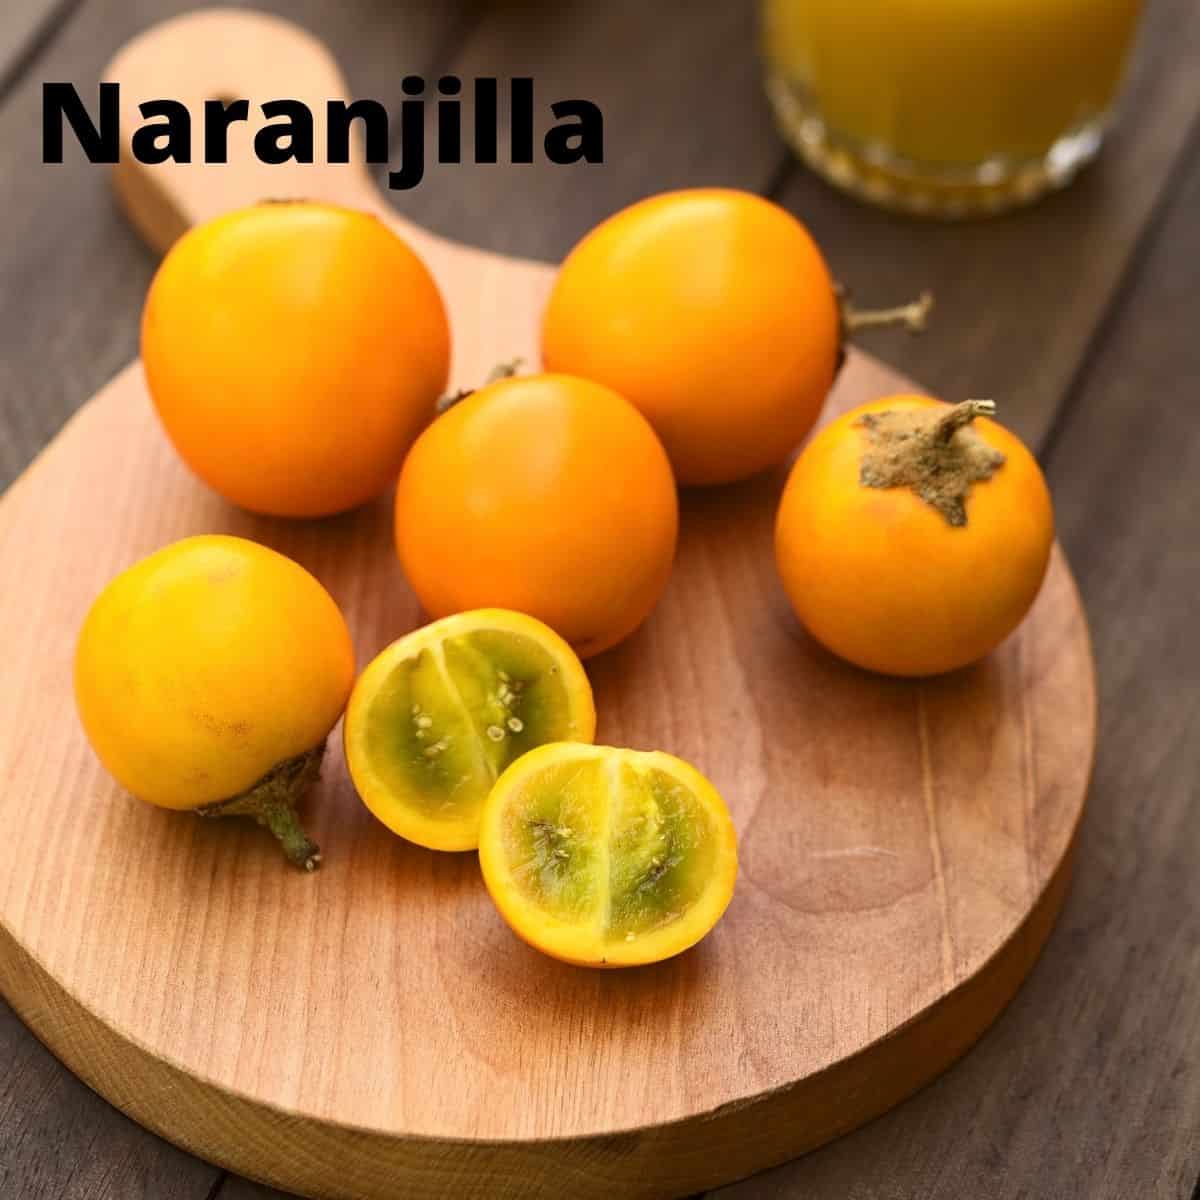 Naranjilla fruits on wood cutting board. 